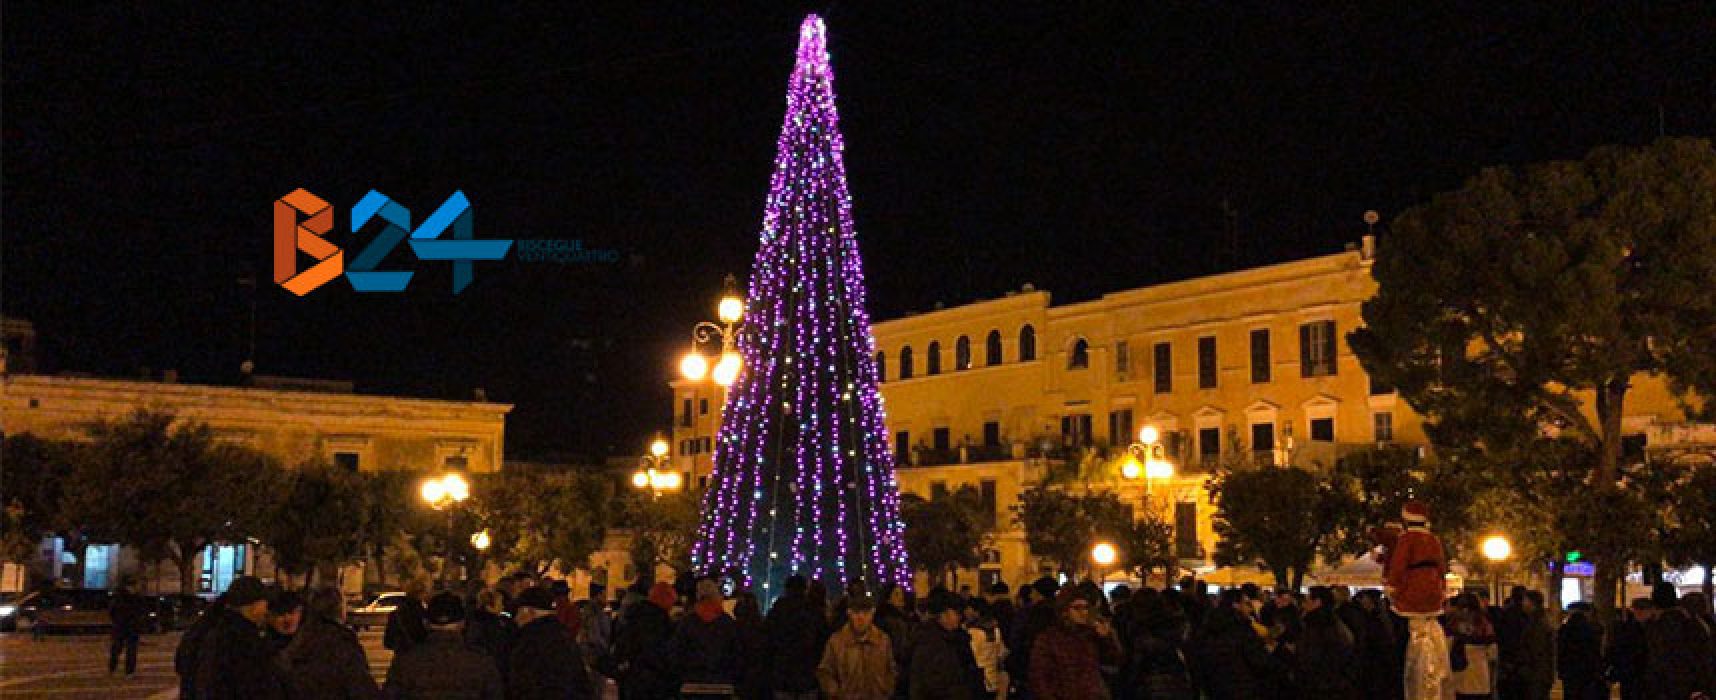 Inaugurazione presepe ed accensione dell’albero, al via il periodo natalizio / FOTO